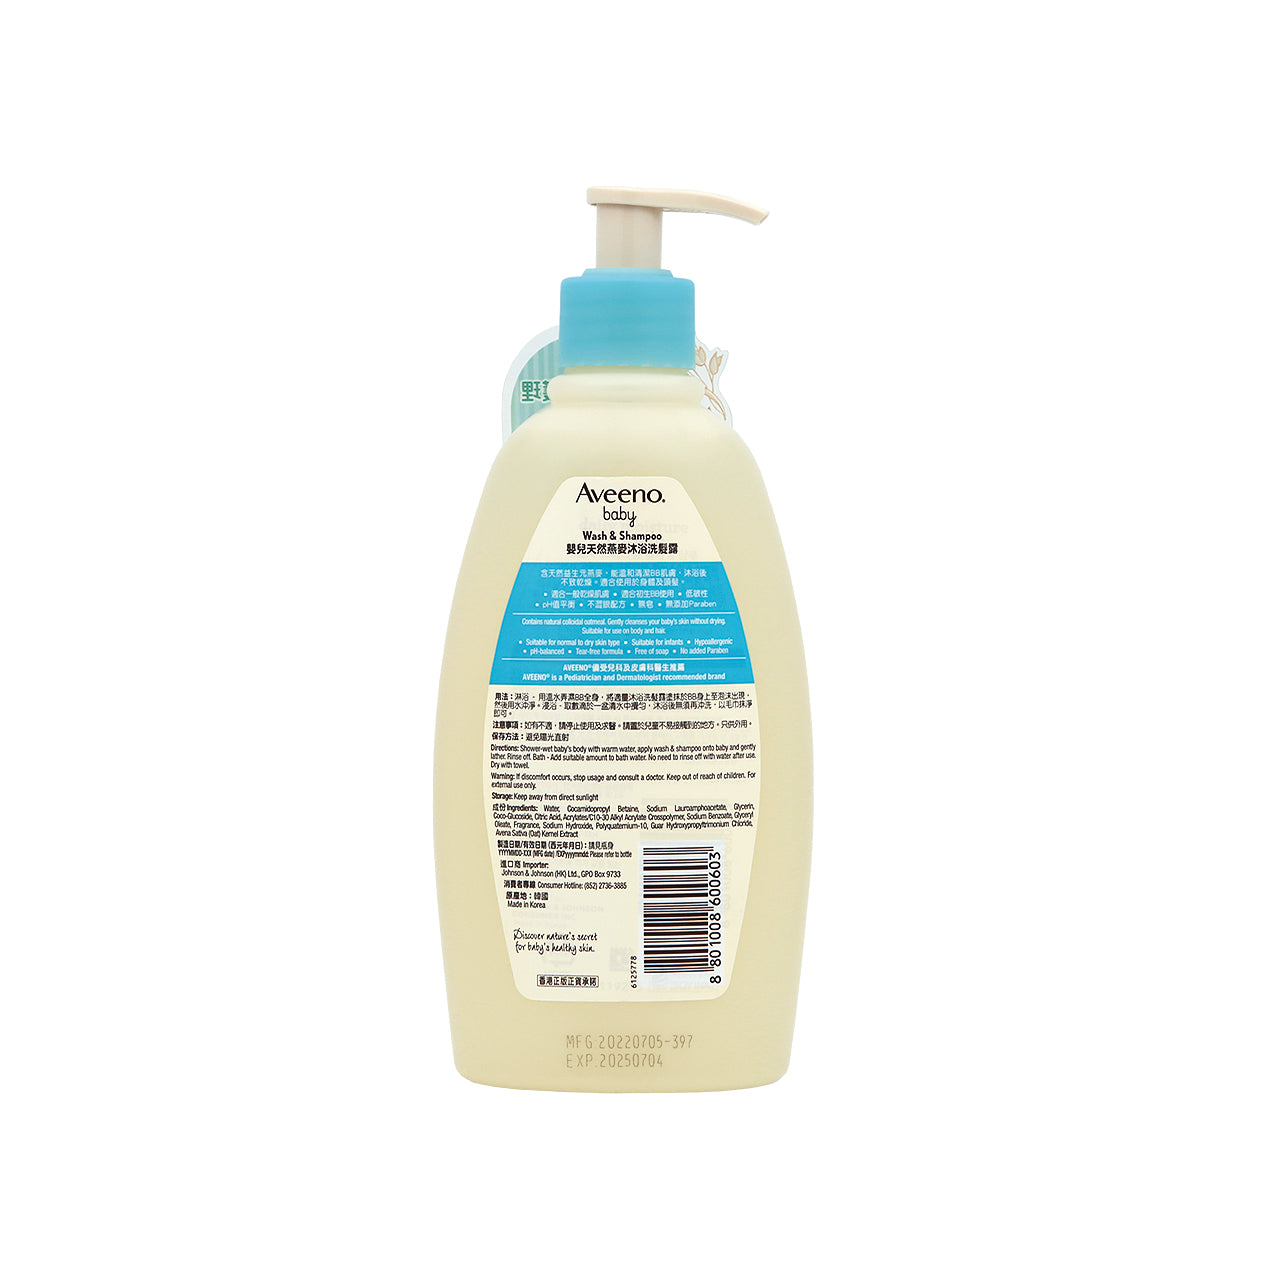 Aveeno Baby Wash & Shampoo 354ML | Sasa Global eShop